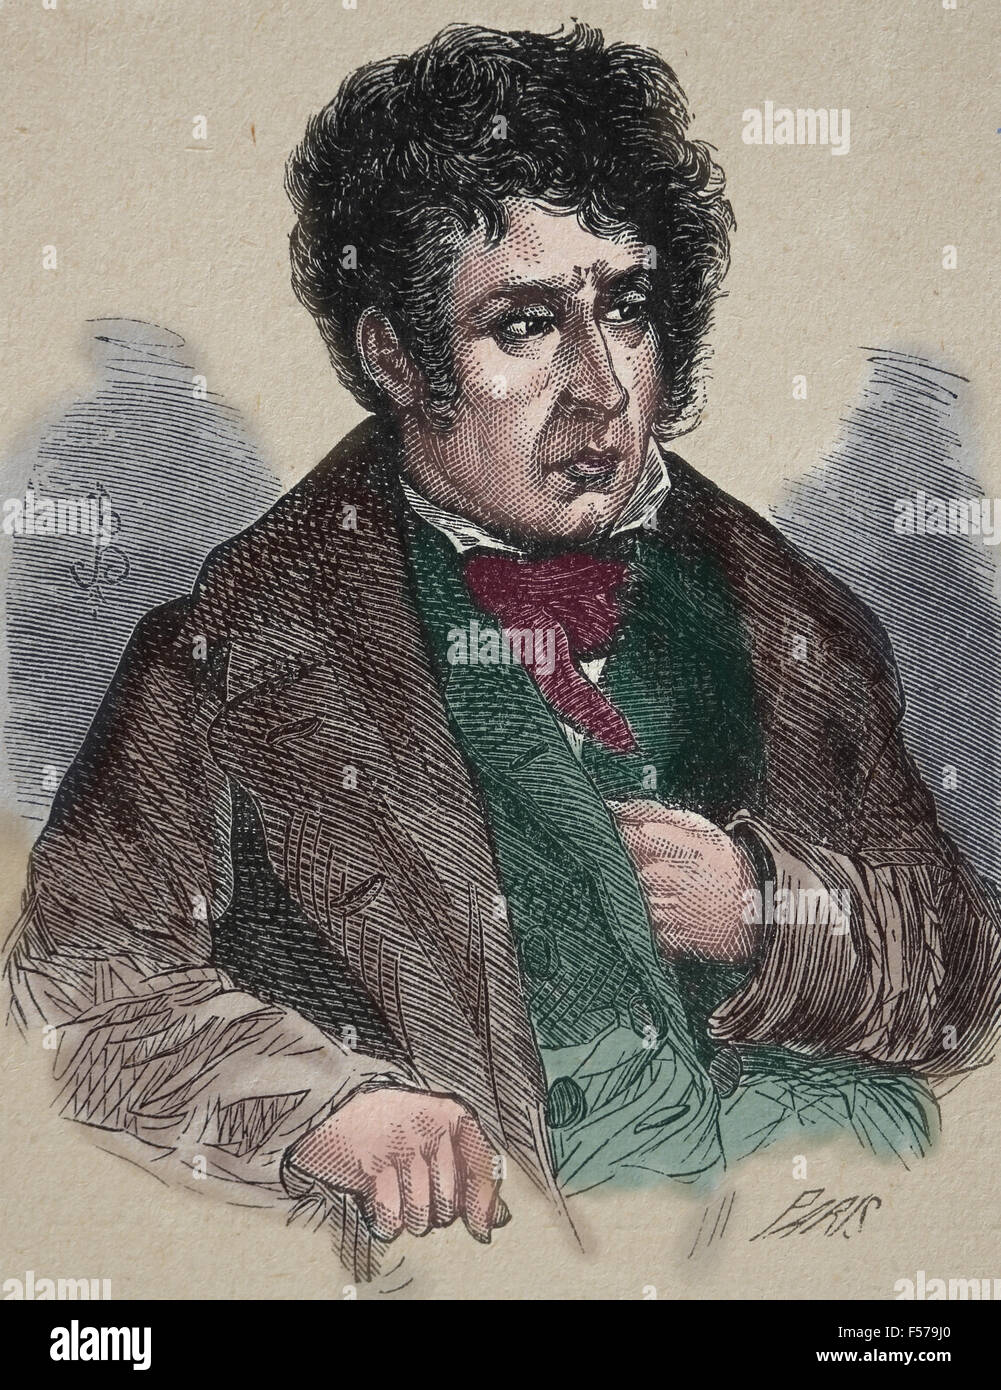 Francois-Rene, Vicomte de Chateaubriand, 1768 - 1848, uno scrittore francese, politico e diplomatico. Incisione di Parigi. Xix secolo Foto Stock